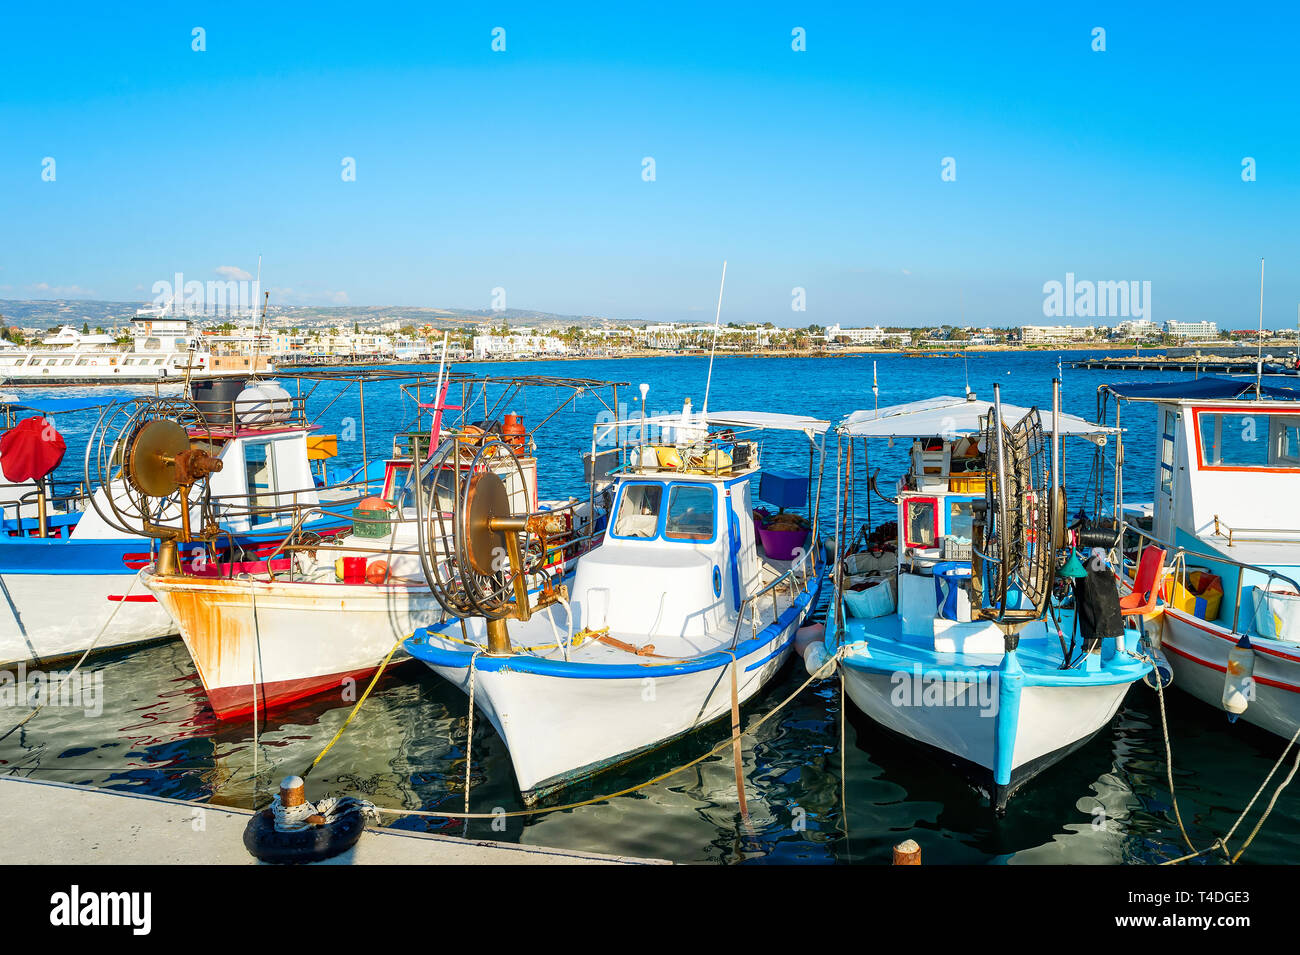 Les bateaux de pêche colorés amarrés dans le port de la ville de Paphos, Chypre, la lumière du soleil Banque D'Images